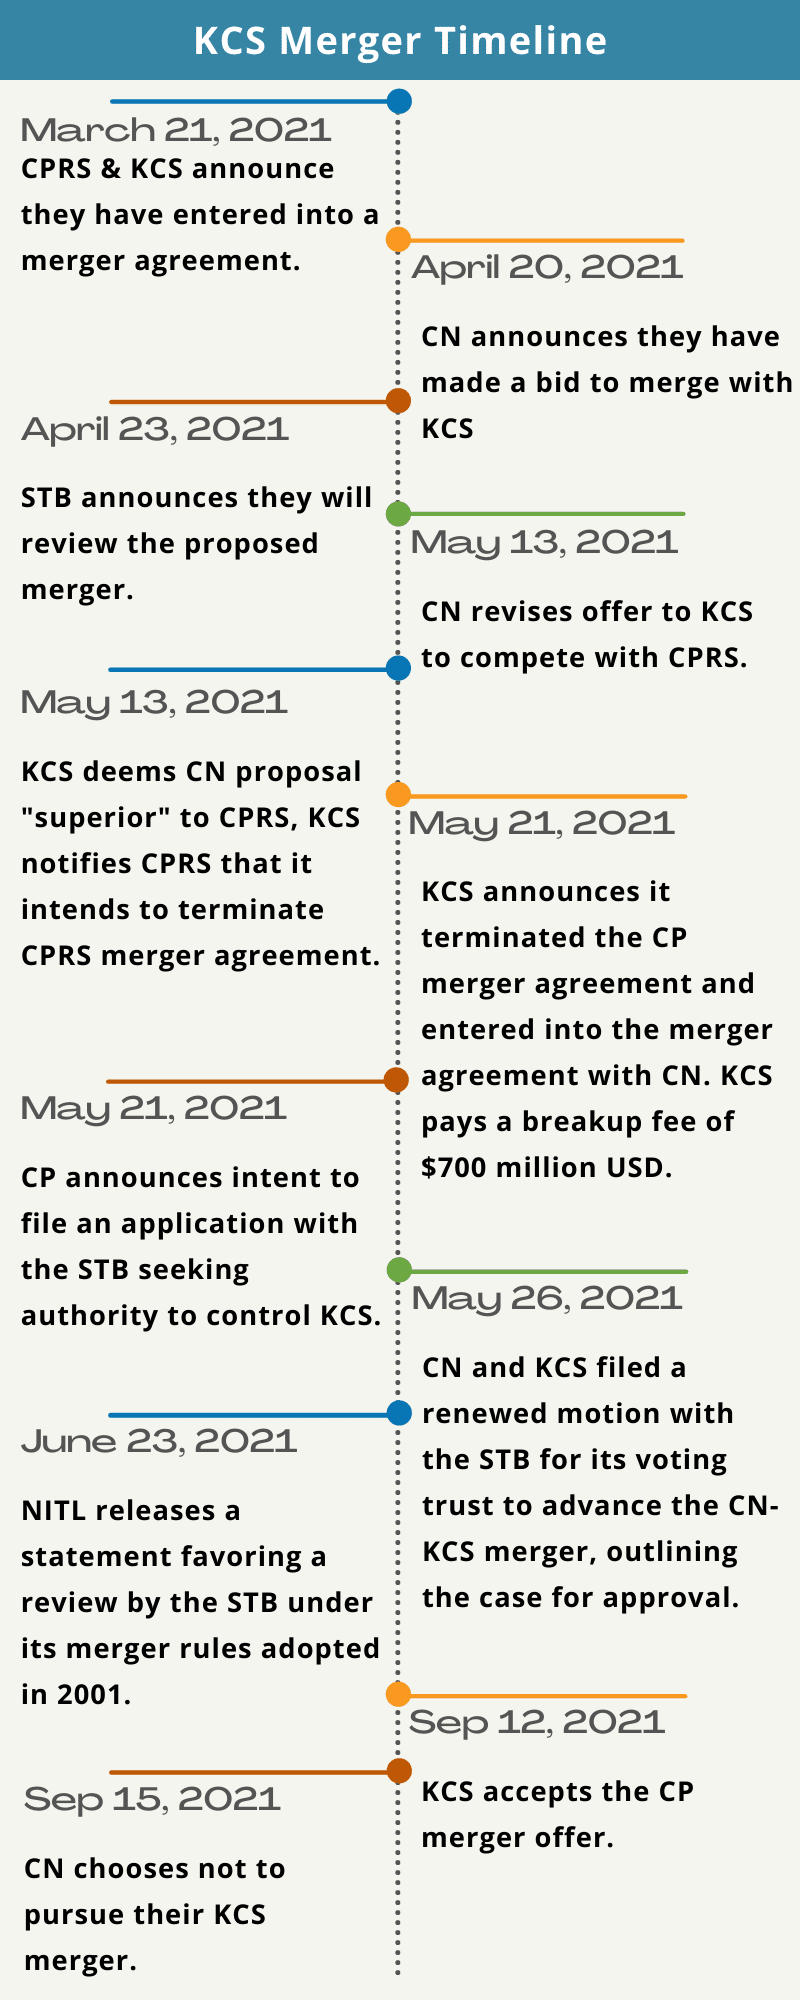 KCS Merger Timeline September 2021